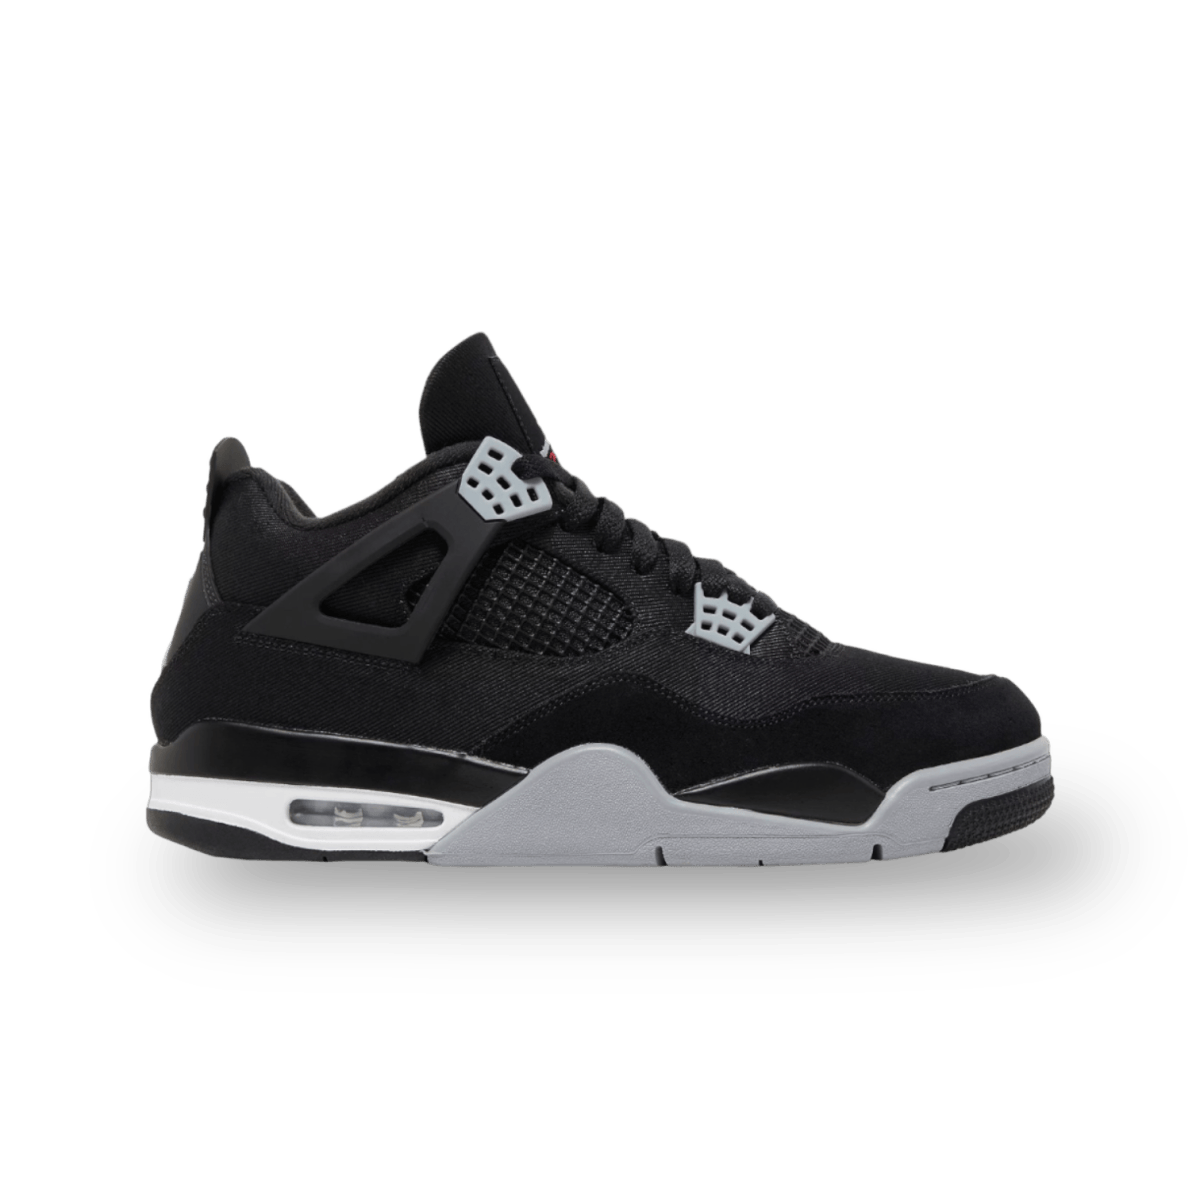 Jordan 4 Retro Black Canvas - Mid Sneaker - Jawns on Fire Sneakers & Streetwear